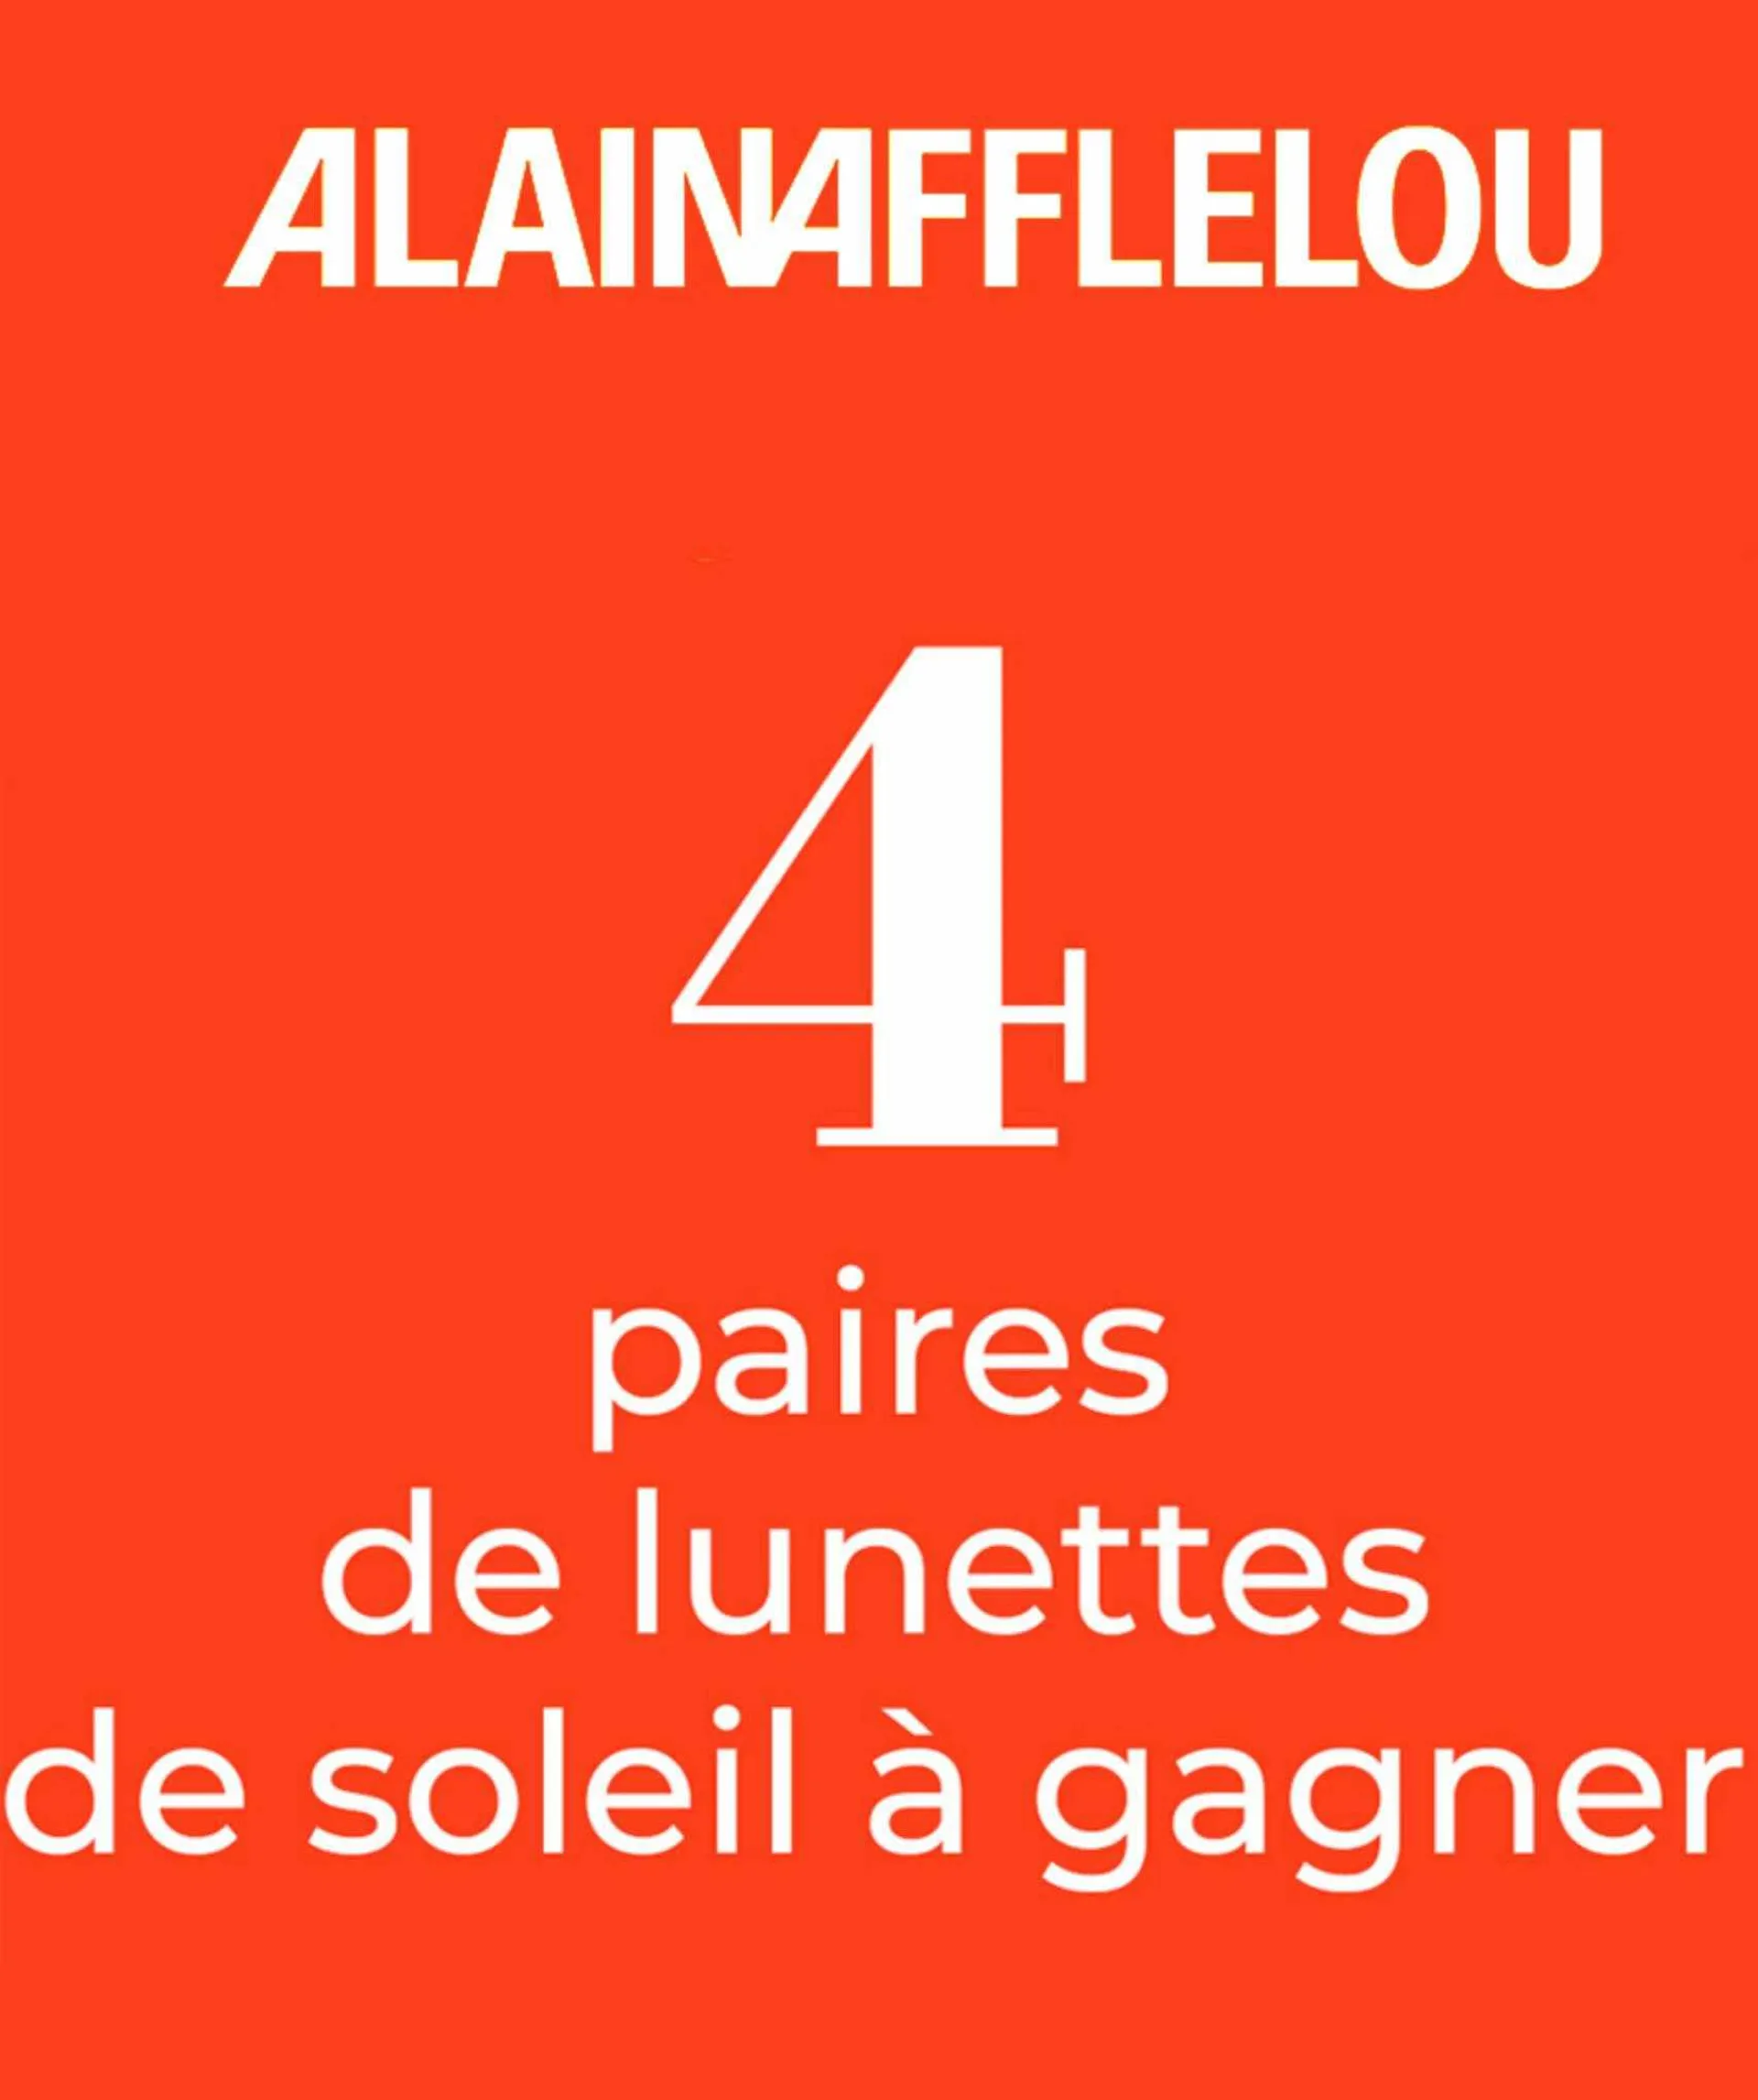 Catalogue Alain Afflelou - 1